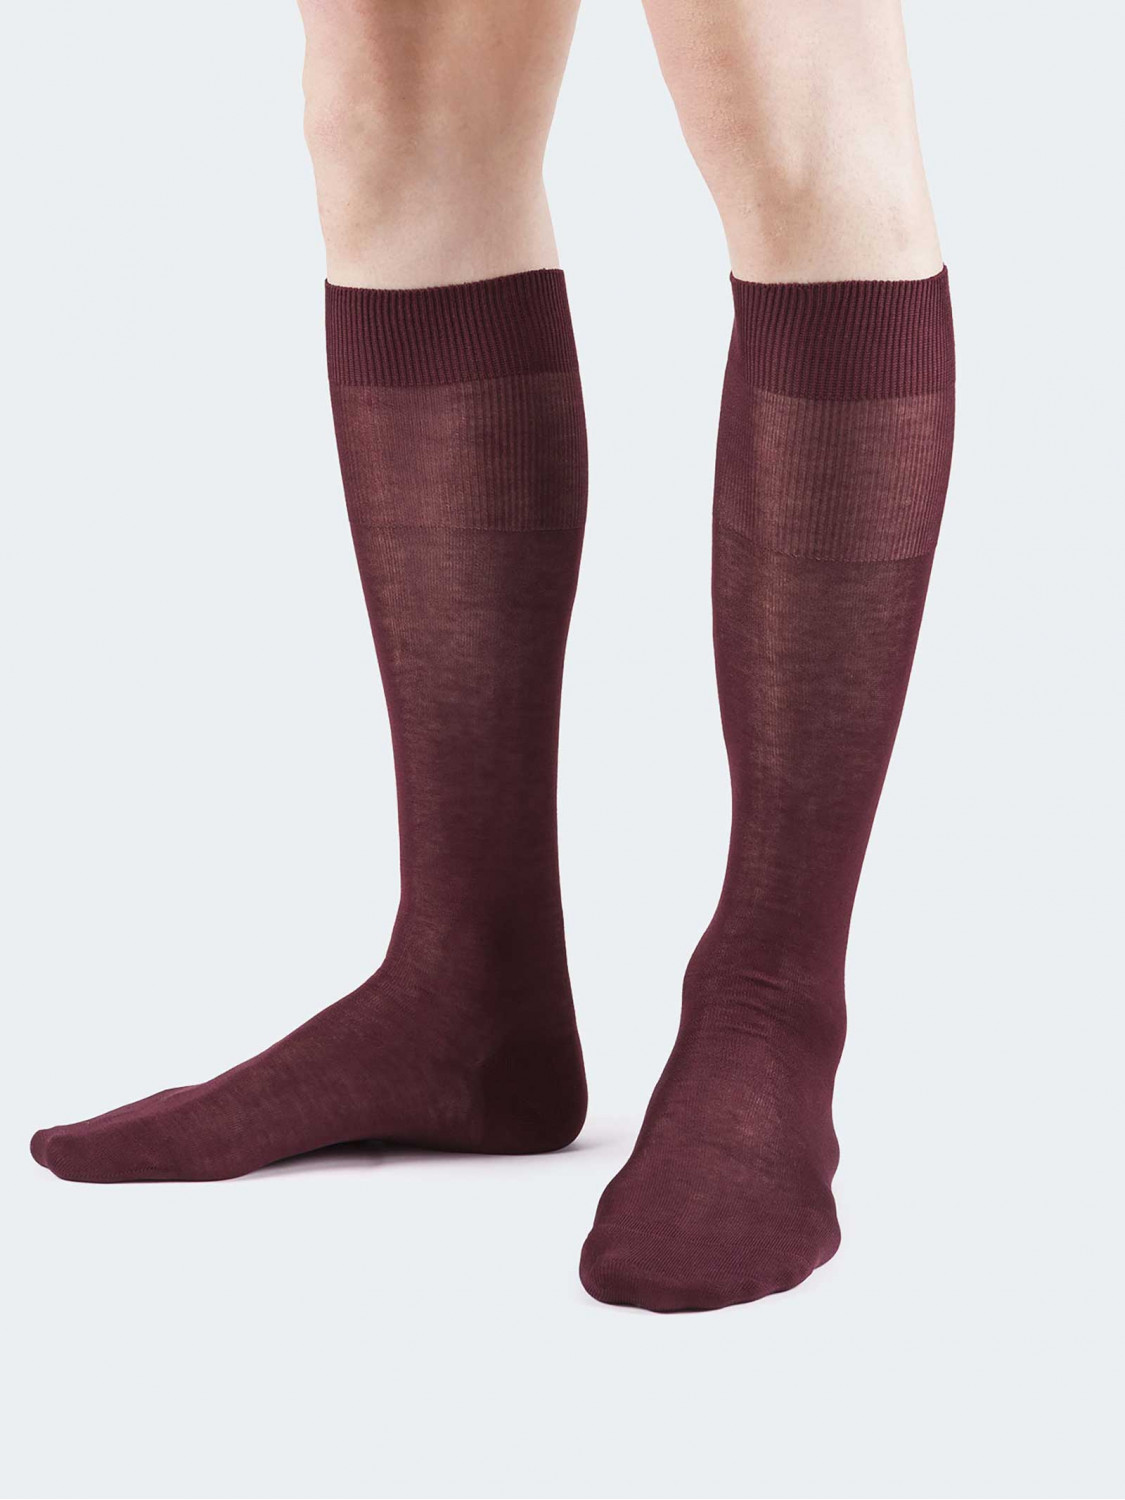 Einfarbige Socken aus 100% Baumwolle - Made in Italy